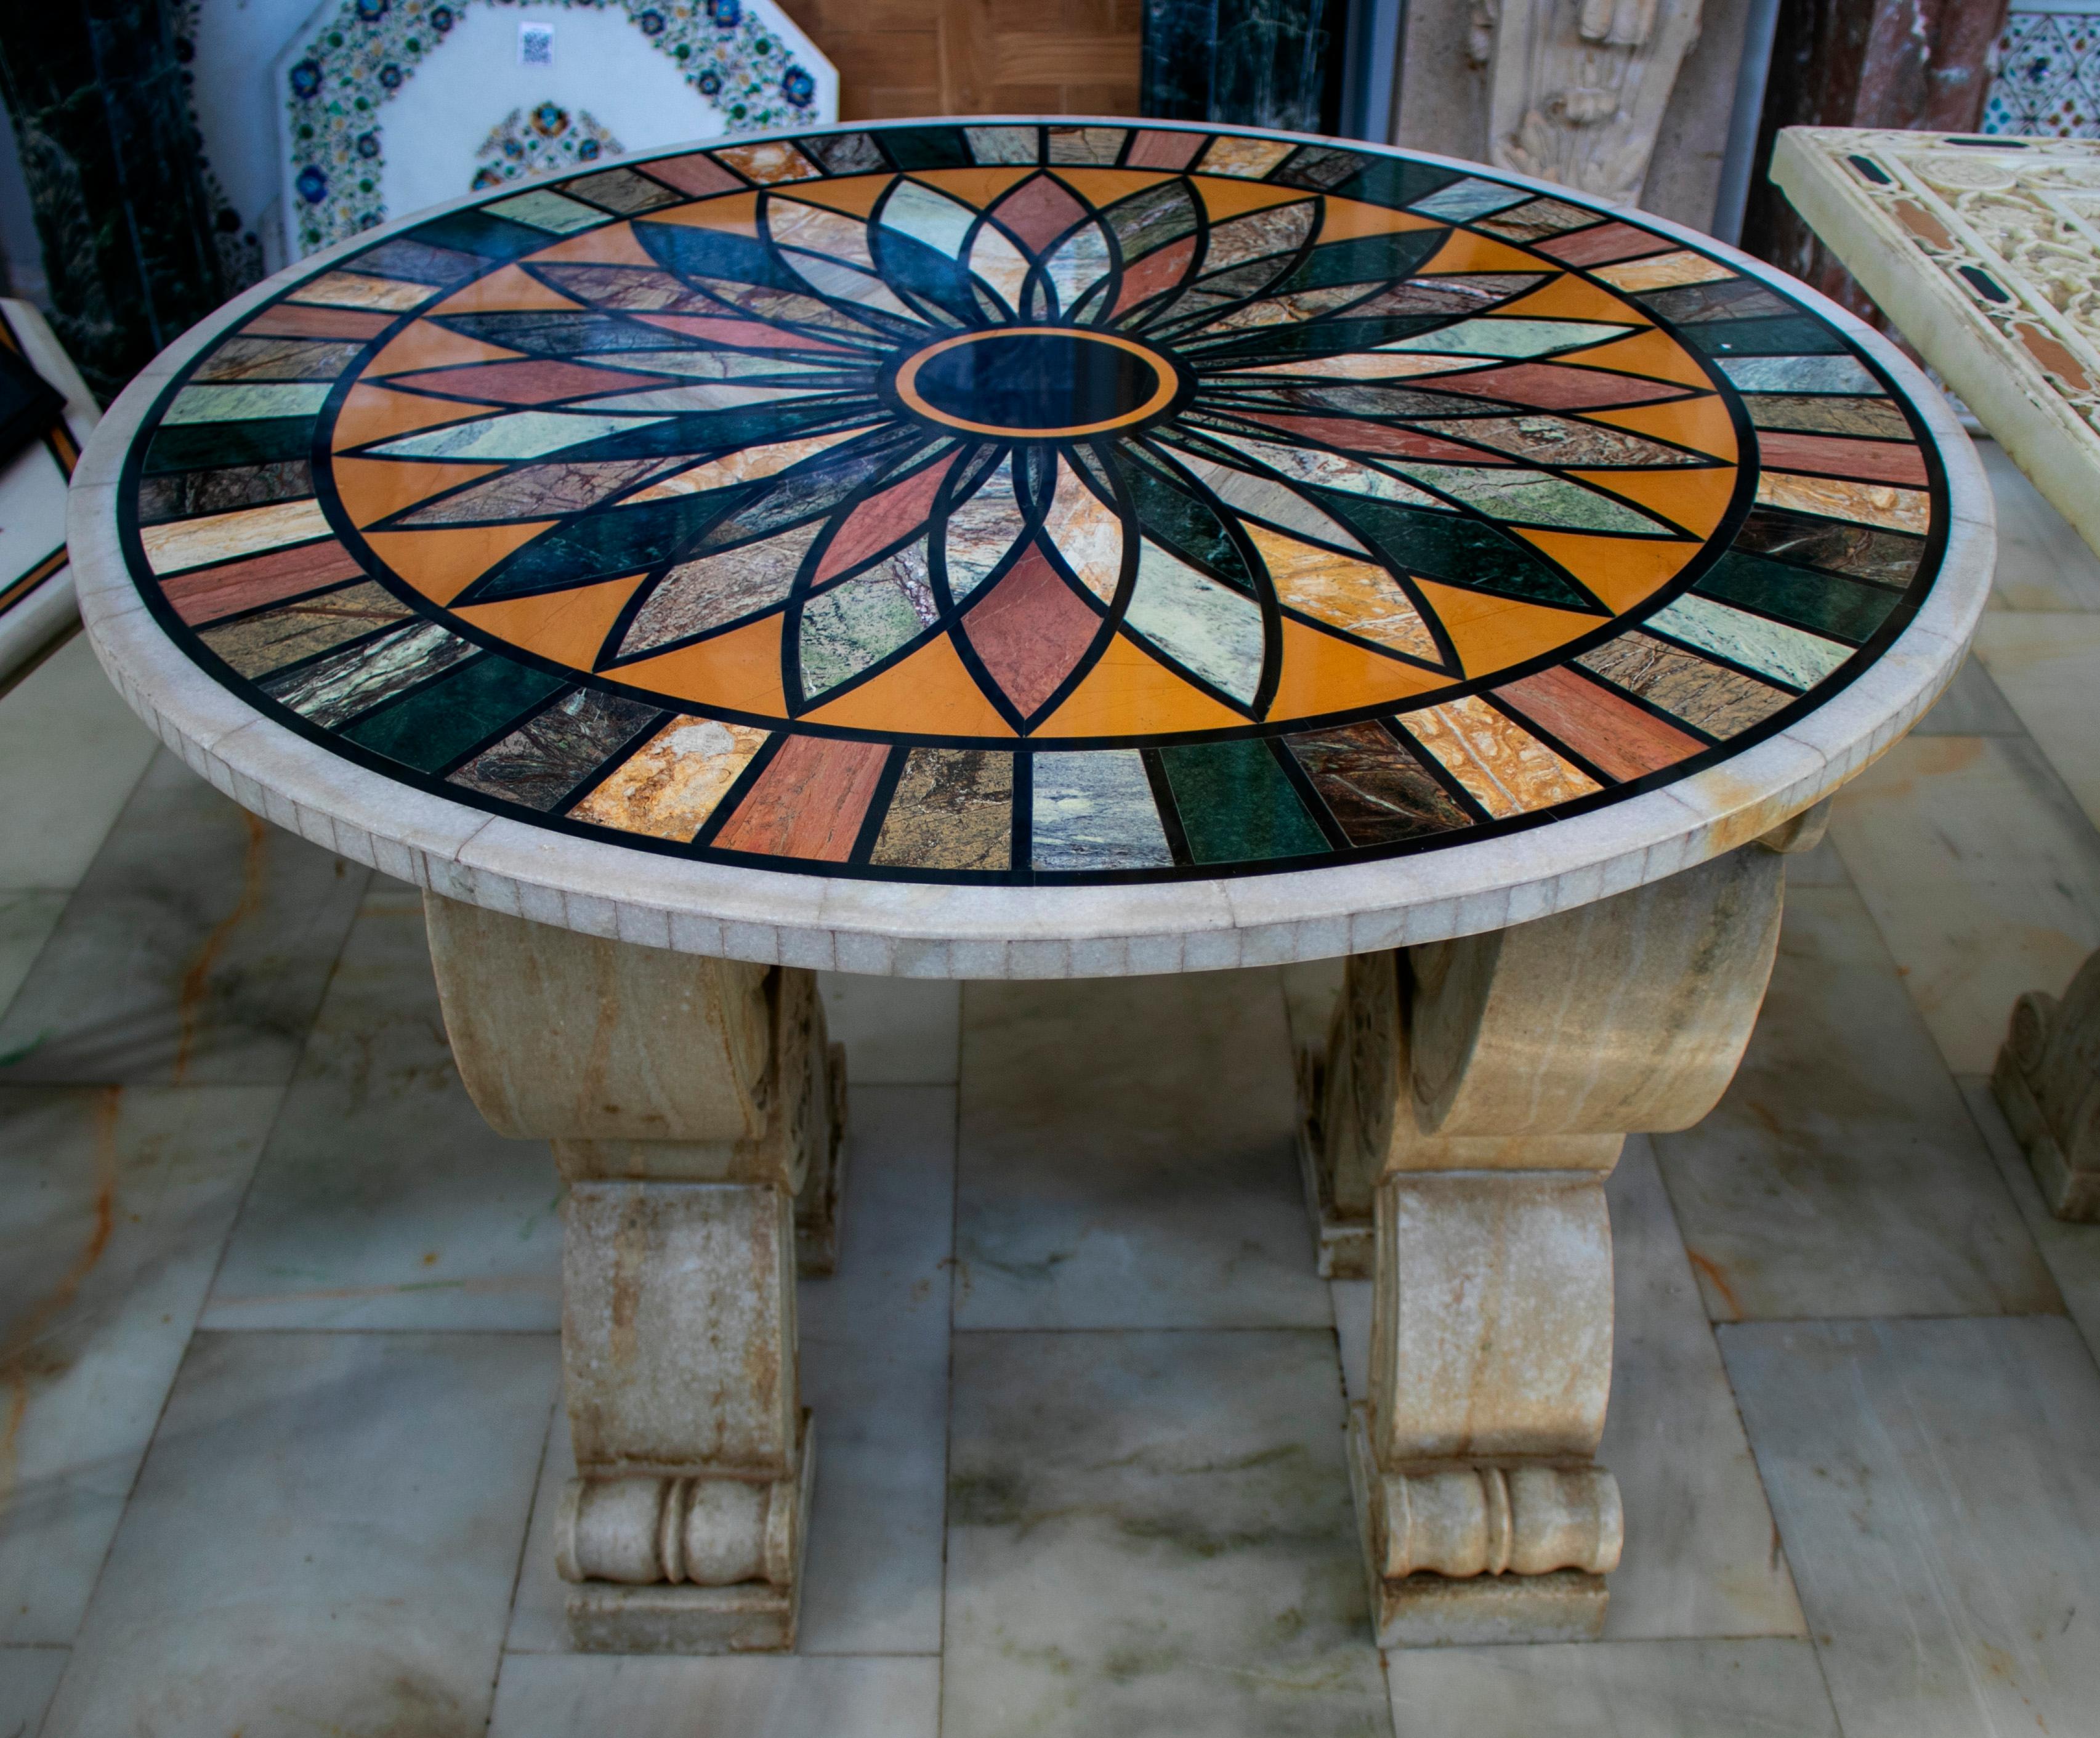 Runde italienische geometrische pietre dure Technik handgemachte Mosaik Tischplatte mit verschiedenen Marmor und Halbedelsteinen.
 